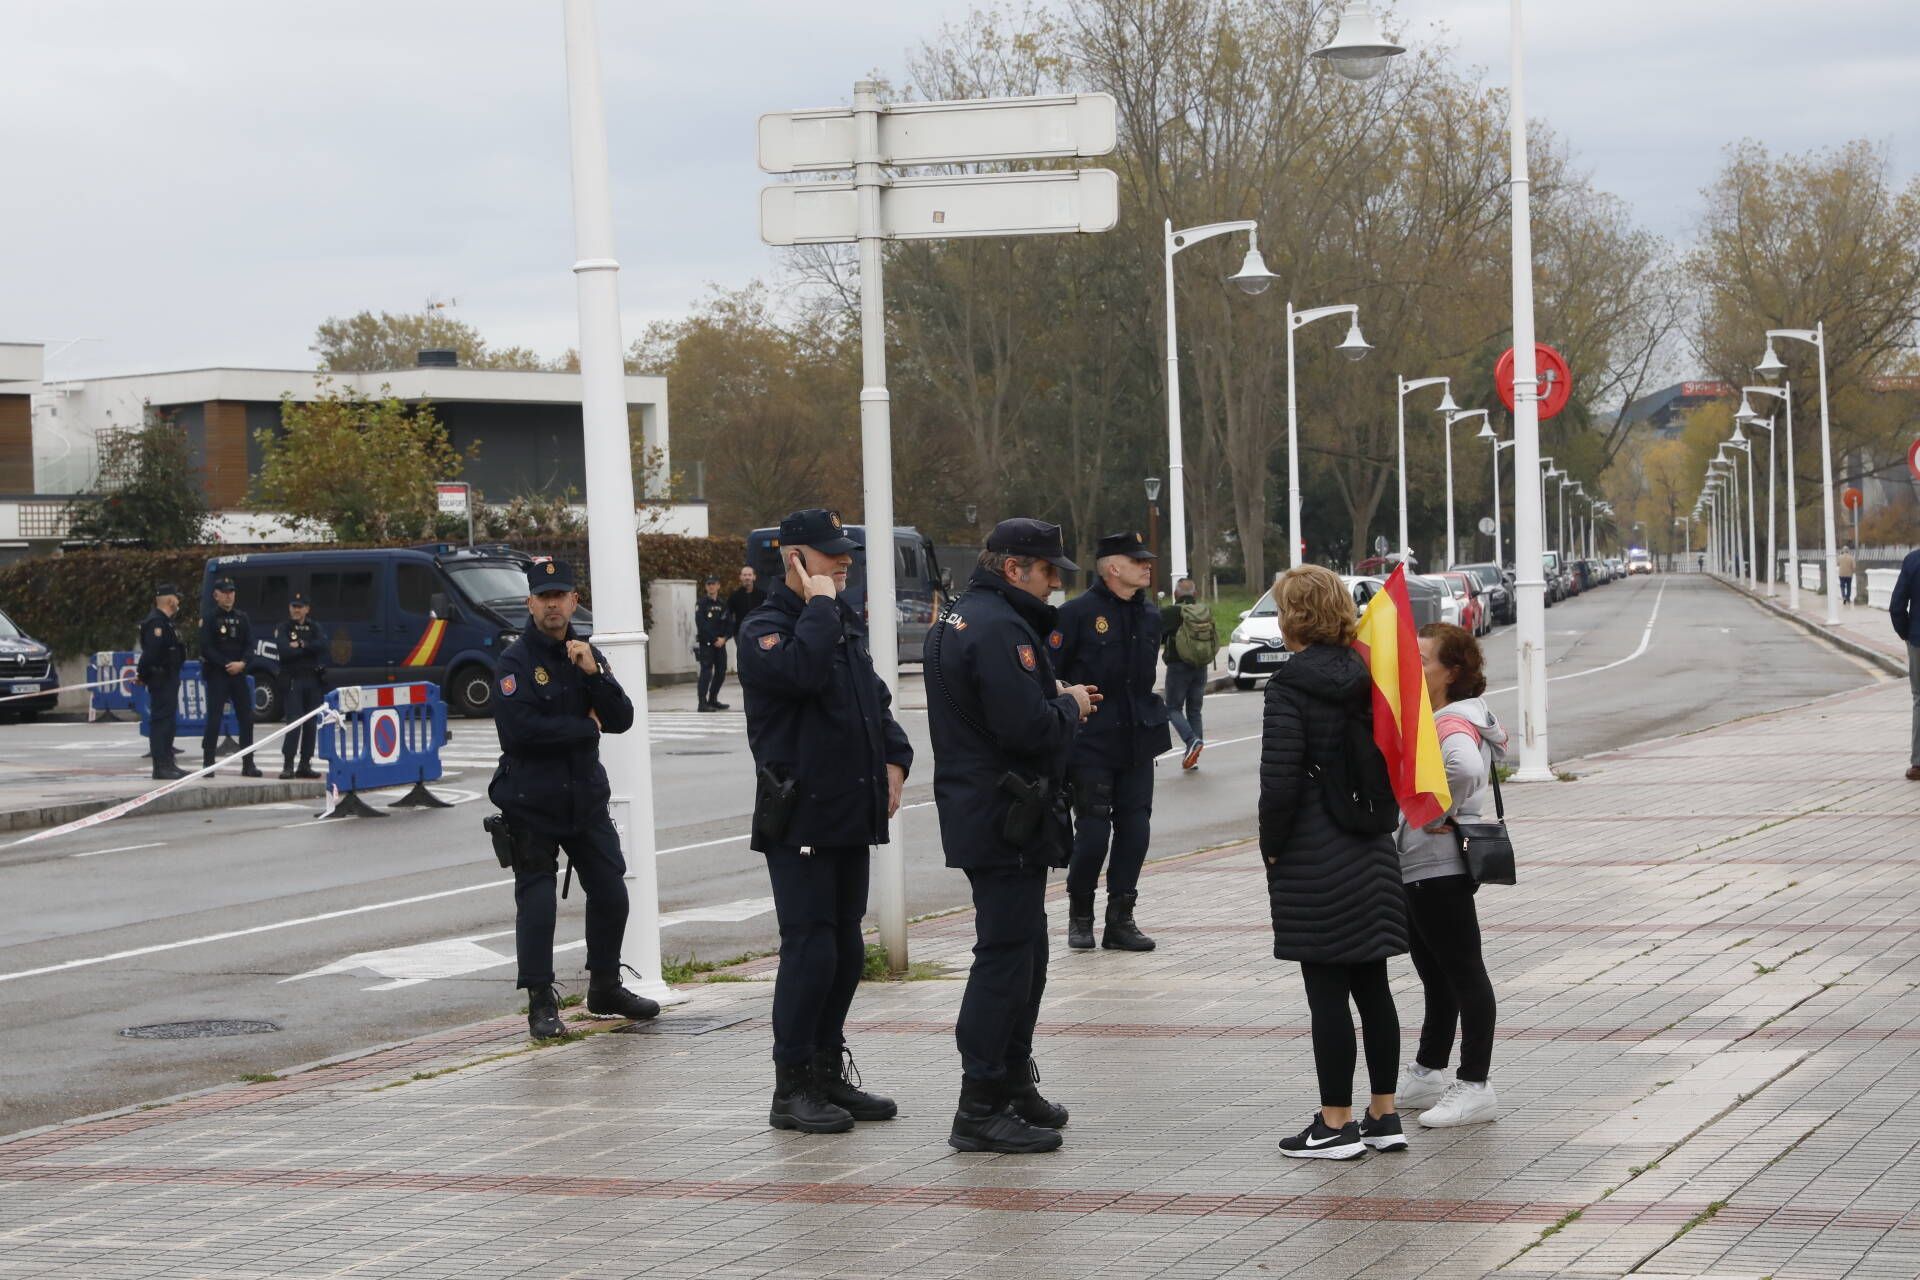 Concentración en Gijón frente a los hoteles del puente del Piles, en imágenes